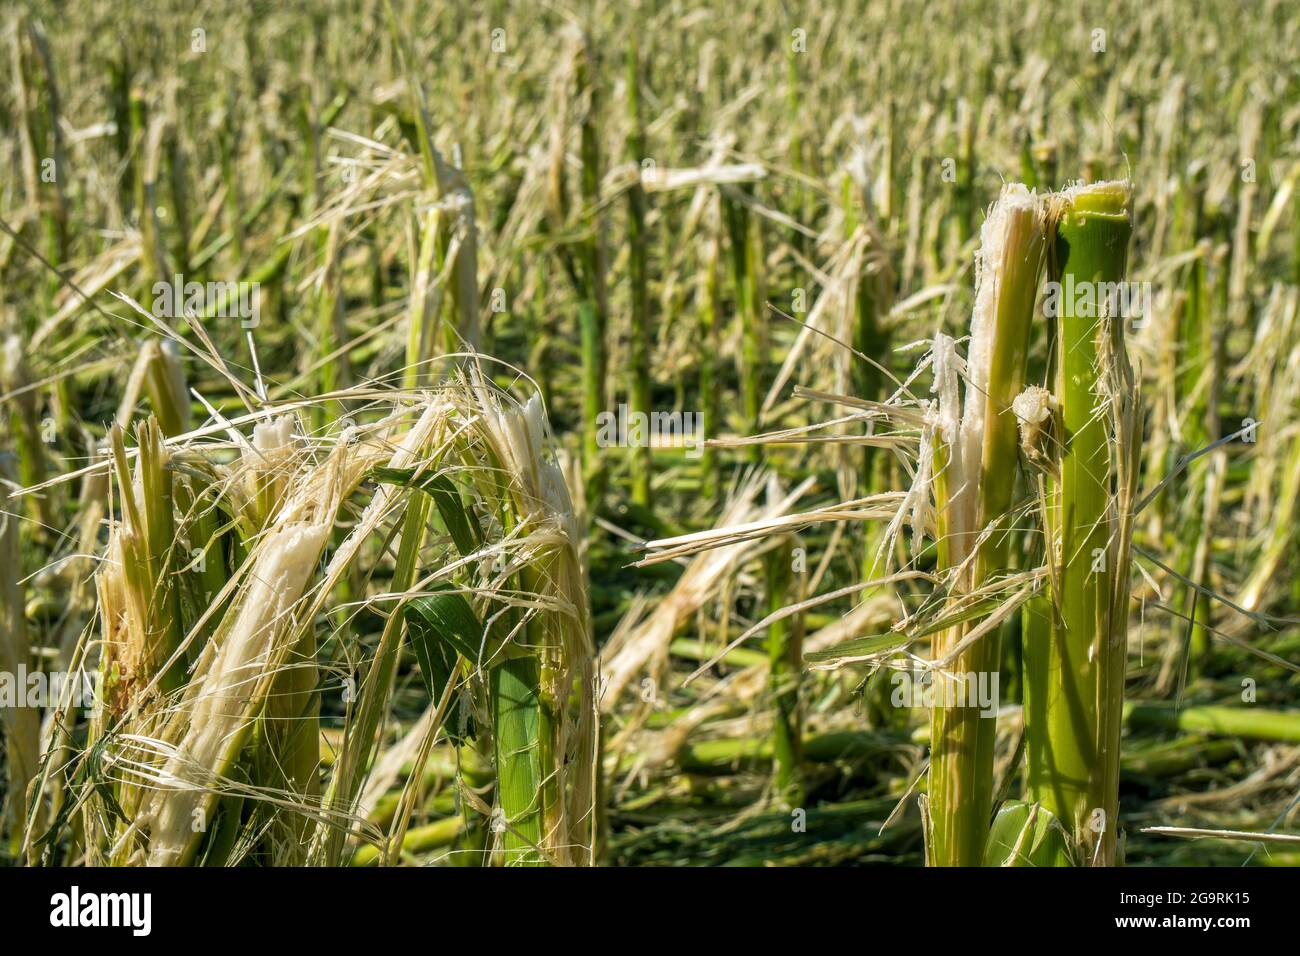 Hagelschaden und Starkregen zerstört Landwirtschaft in Bayern nördlich von Murnau Foto Stock